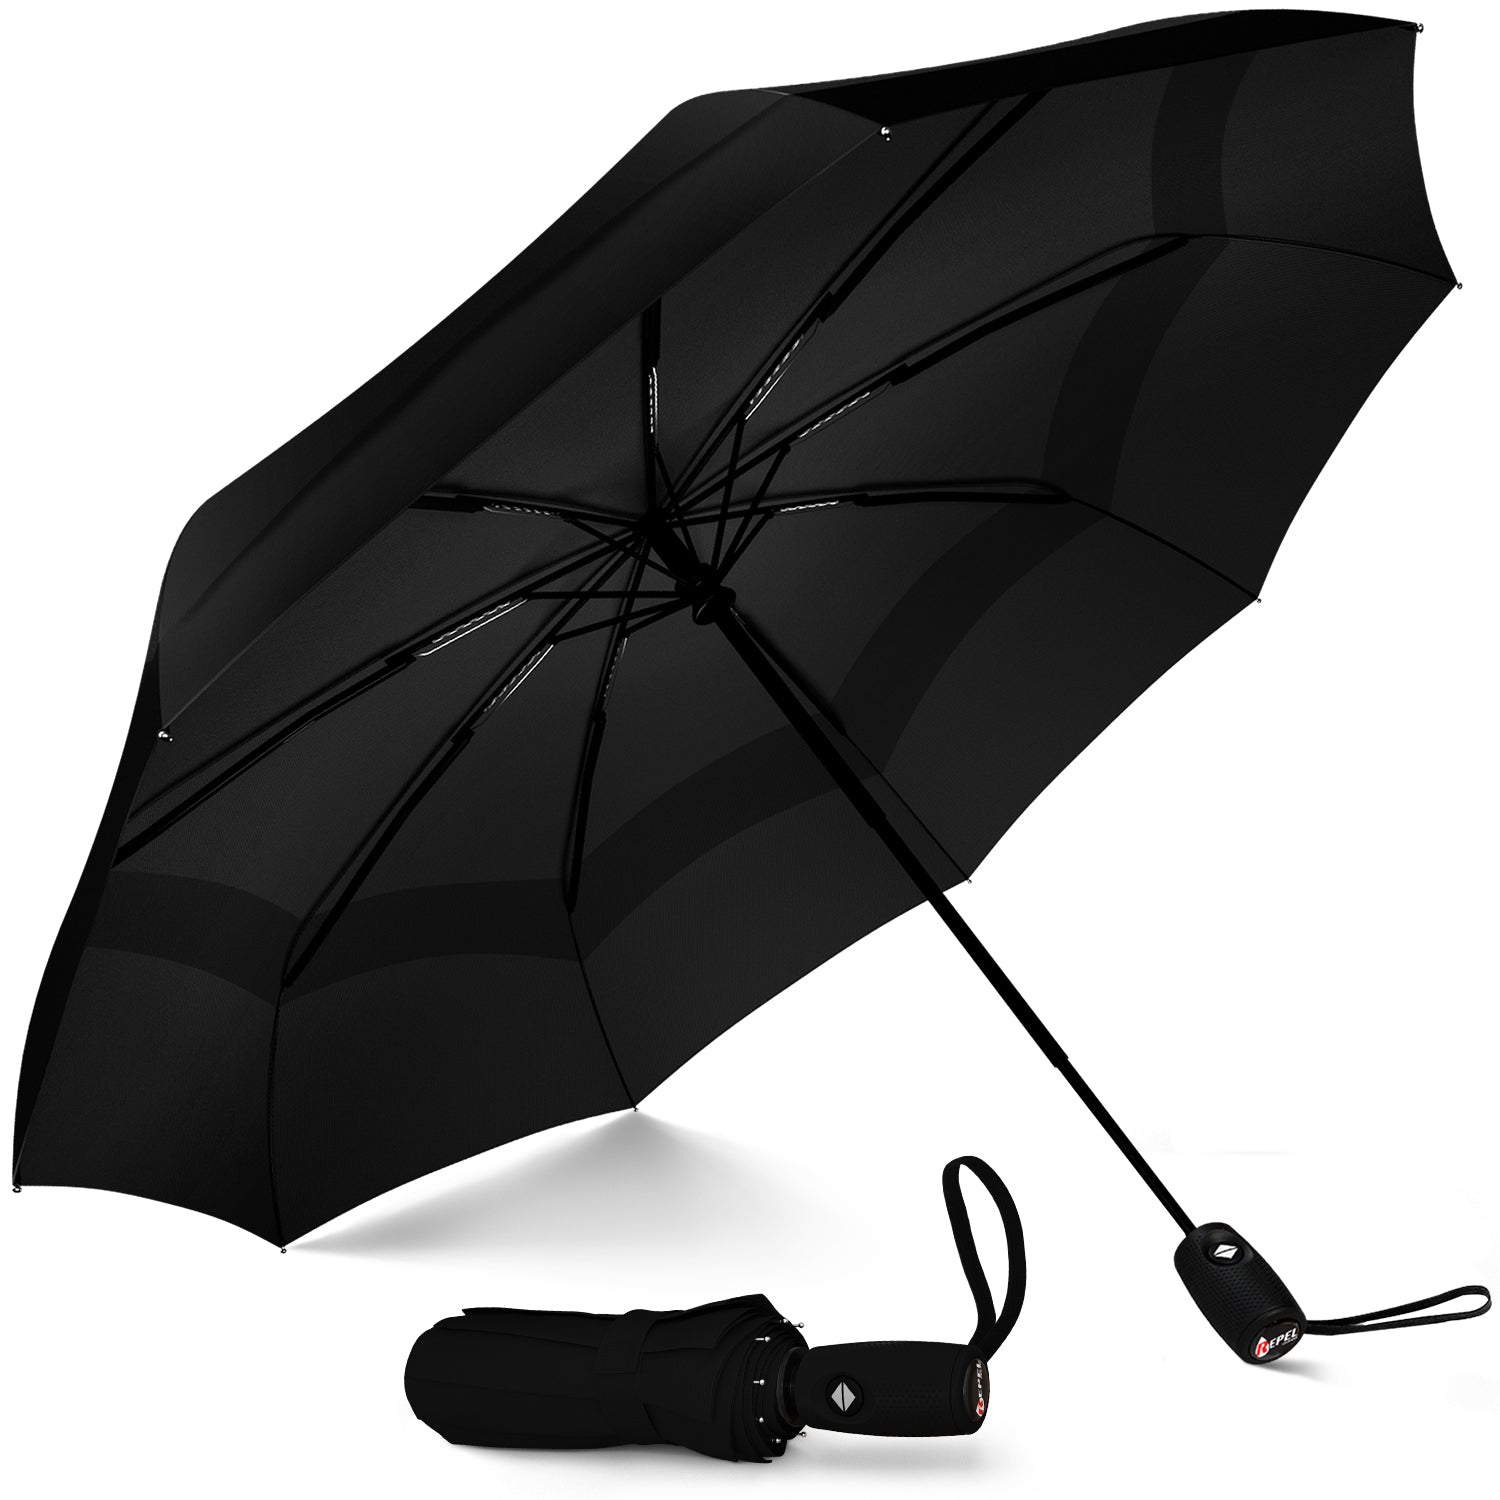 Umbrella brand - Wikipedia